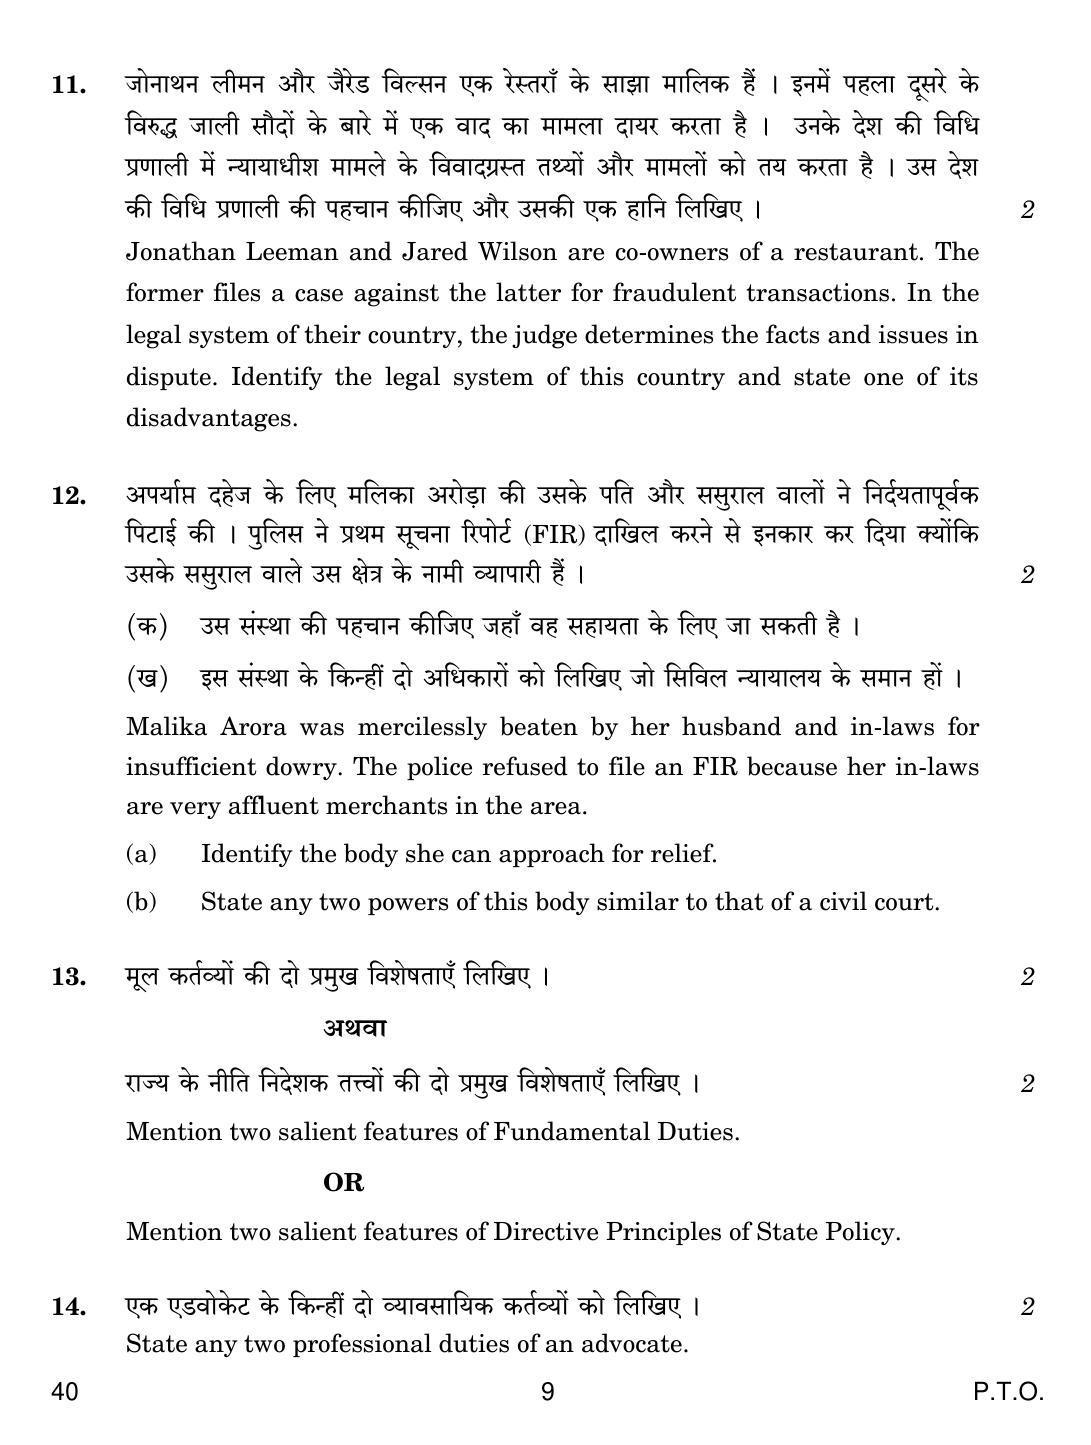 CBSE Class 12 40 Legal Studies 2019 Question Paper - Page 9